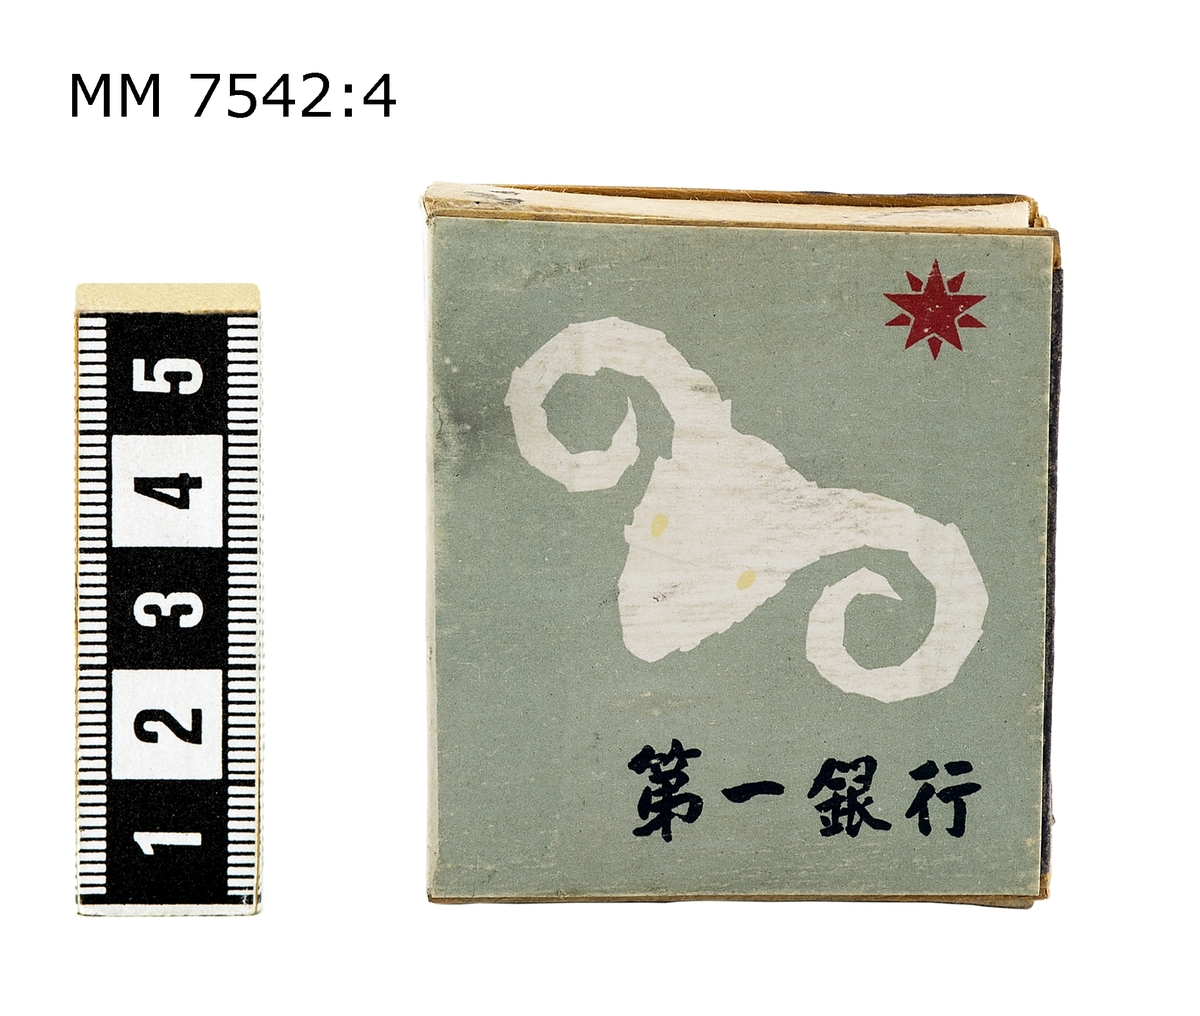 Tändsticksask - Enligt meddelare på DigitaltMuseum står det "DAI-Ichi-Gin-Kou" på asken vilket är namnet på en bank. Troligen kommer asken alltså från en bank.